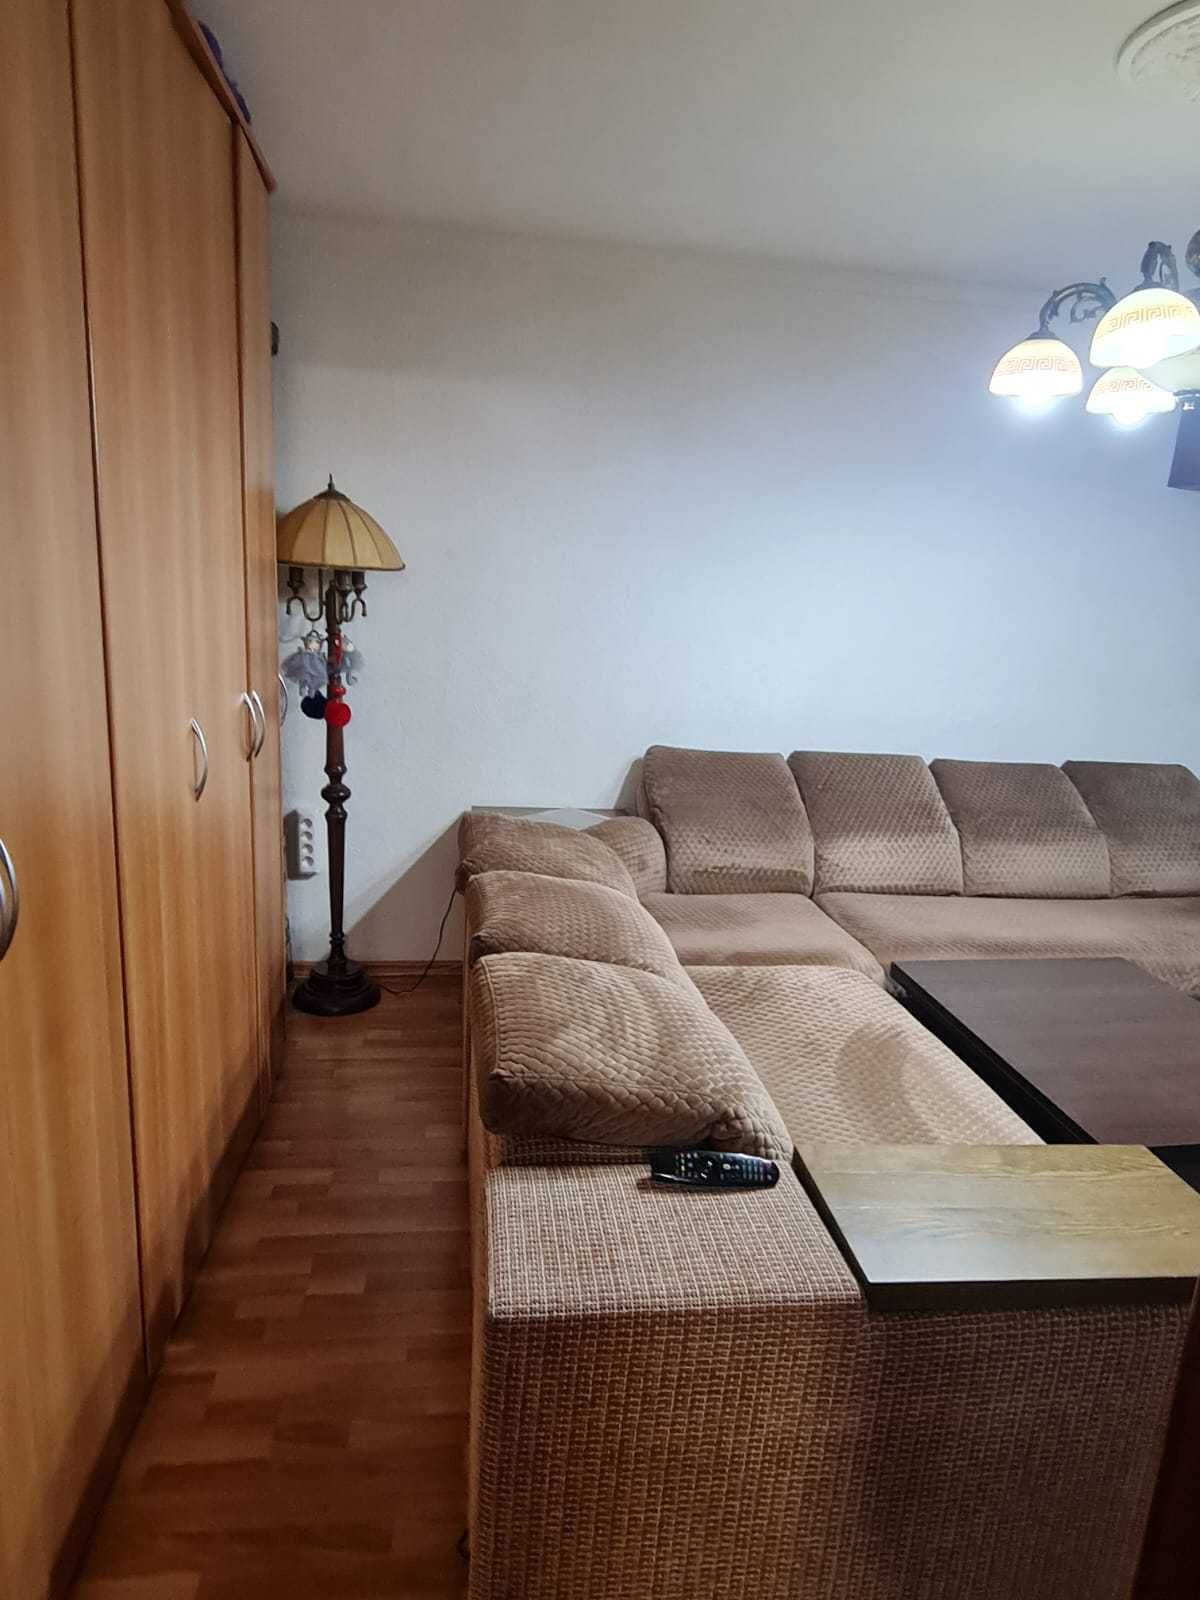 Продам 2-комнатную квартиру в экологическом районе г.Жезказган.